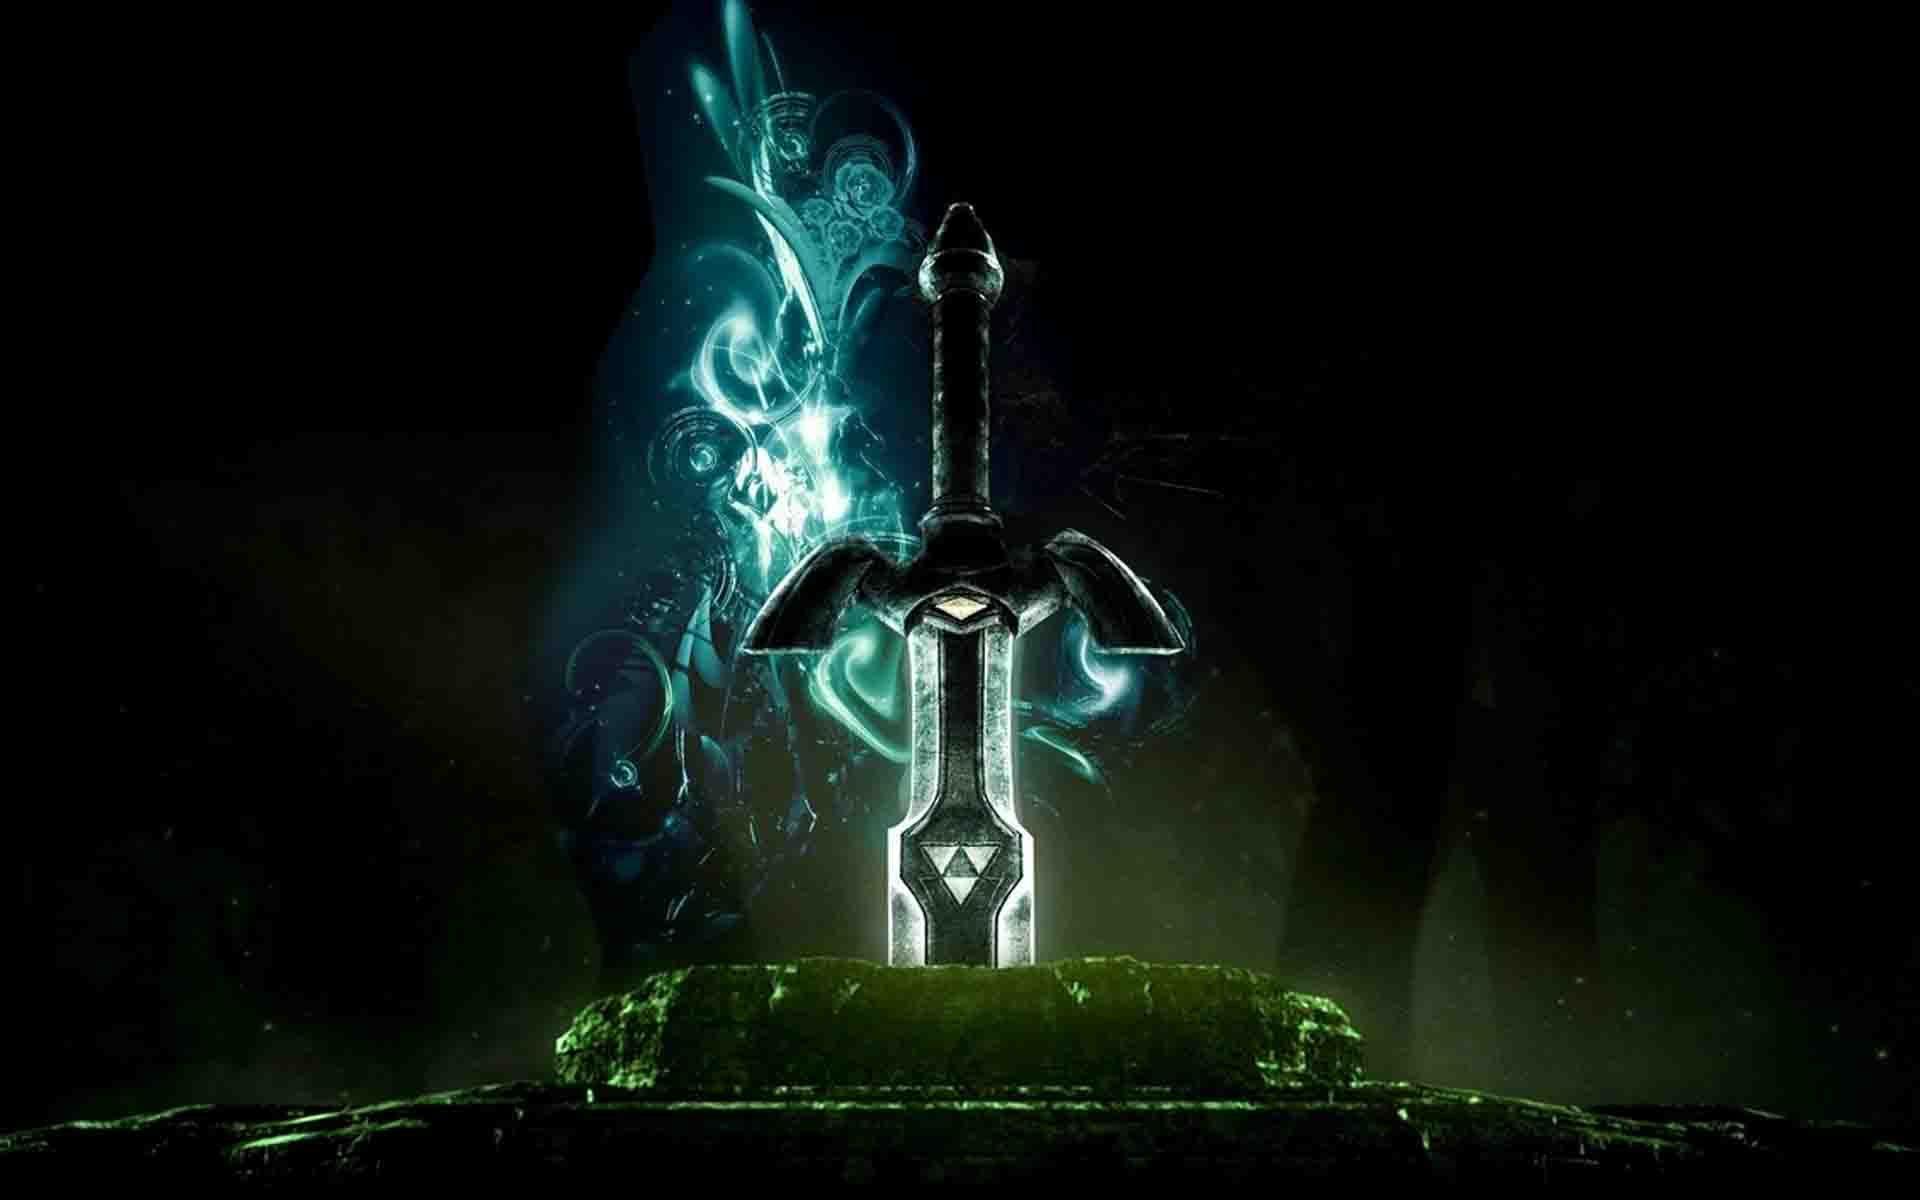 Animated sword HD wallpaper. Master sword, Zelda master sword, Legend of zelda